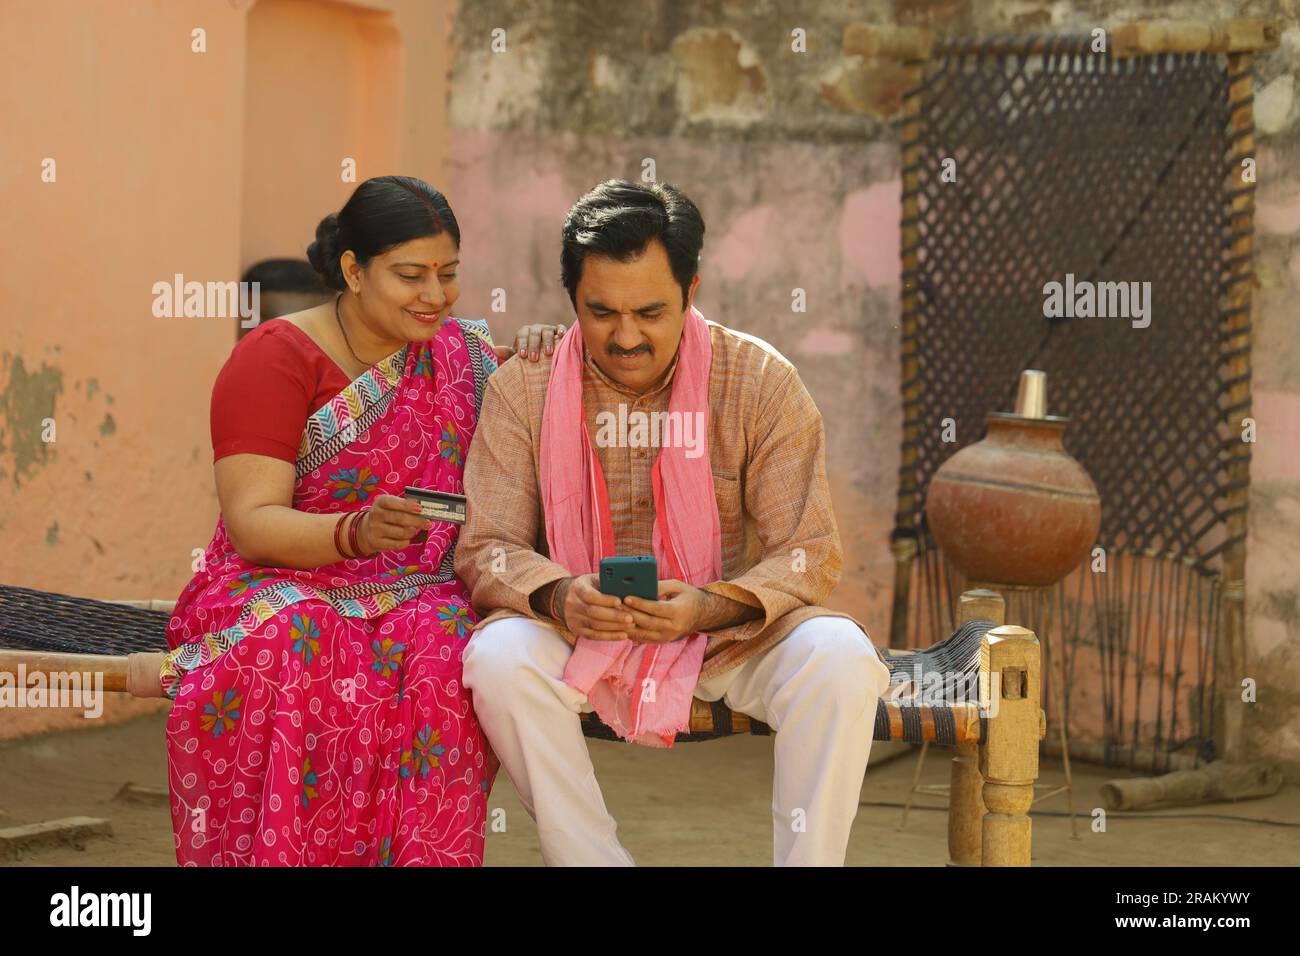 Eine glückliche Familie aus dem indischen Dorf, die den Laptop vor dem Haus benutzt hat. Mann und Frau zahlen gerne online mit Kreditkarte Stockfoto